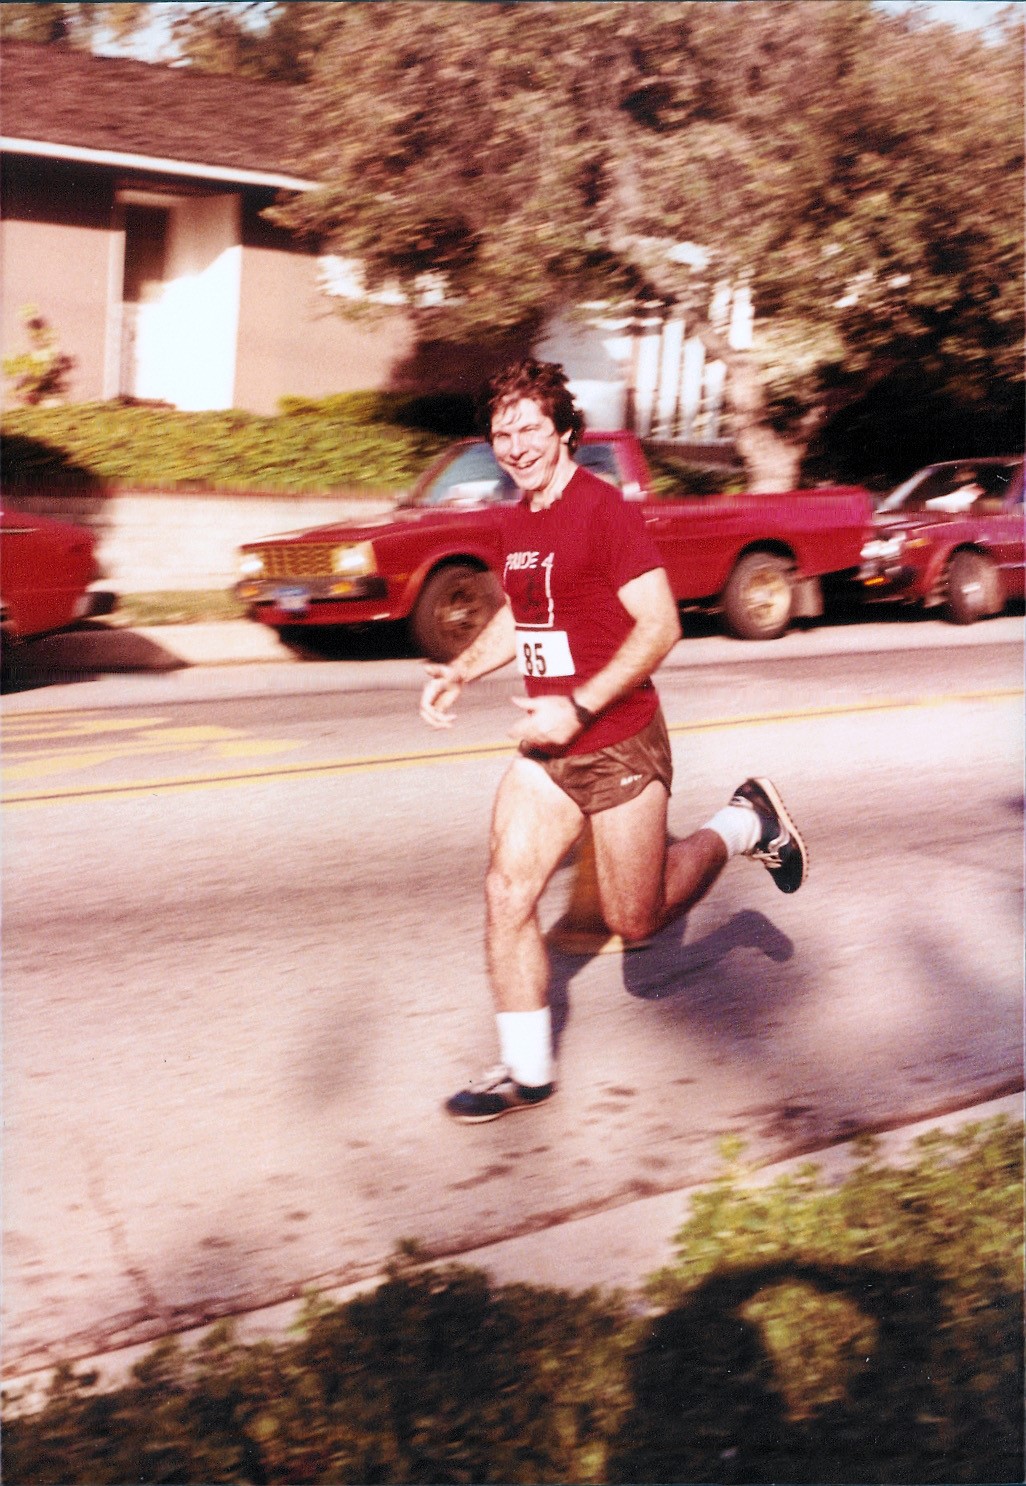 Hal Finney was a seasoned distance runner